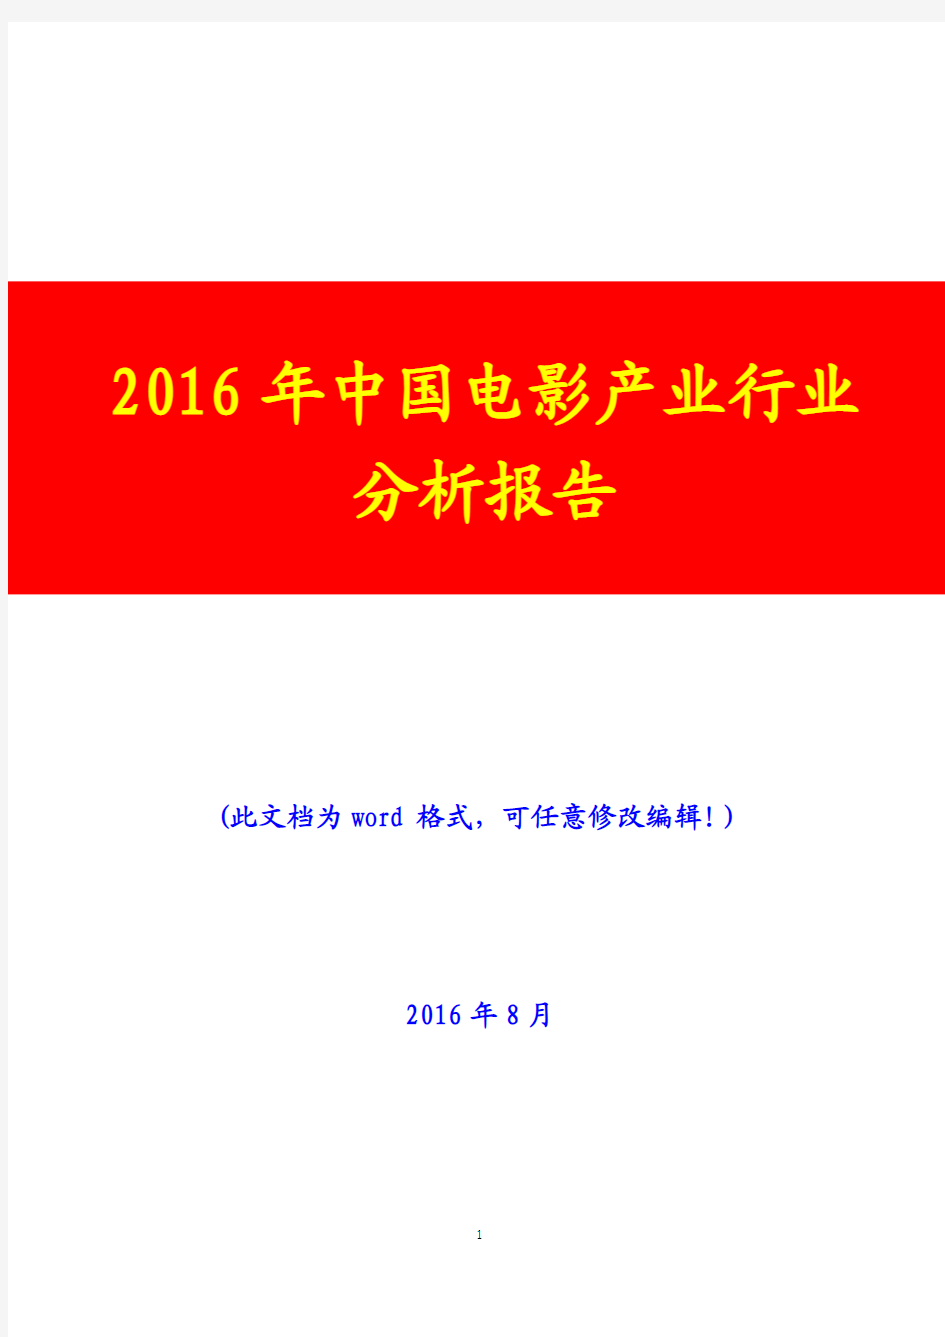 2016年中国电影产业行业分析报告(经典版)